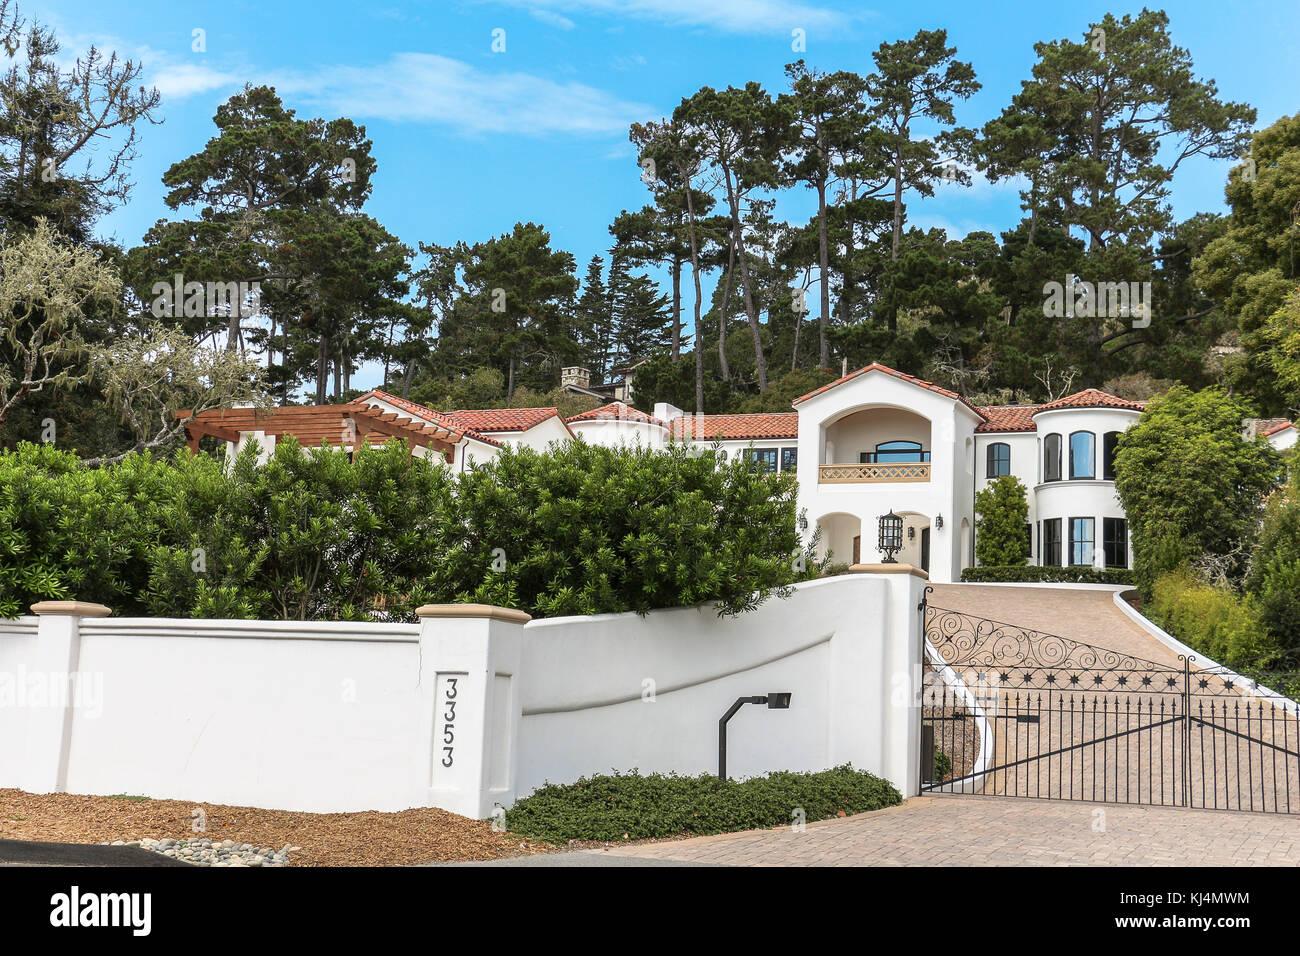 Rich villa on 17 mile drive in california Stock Photo